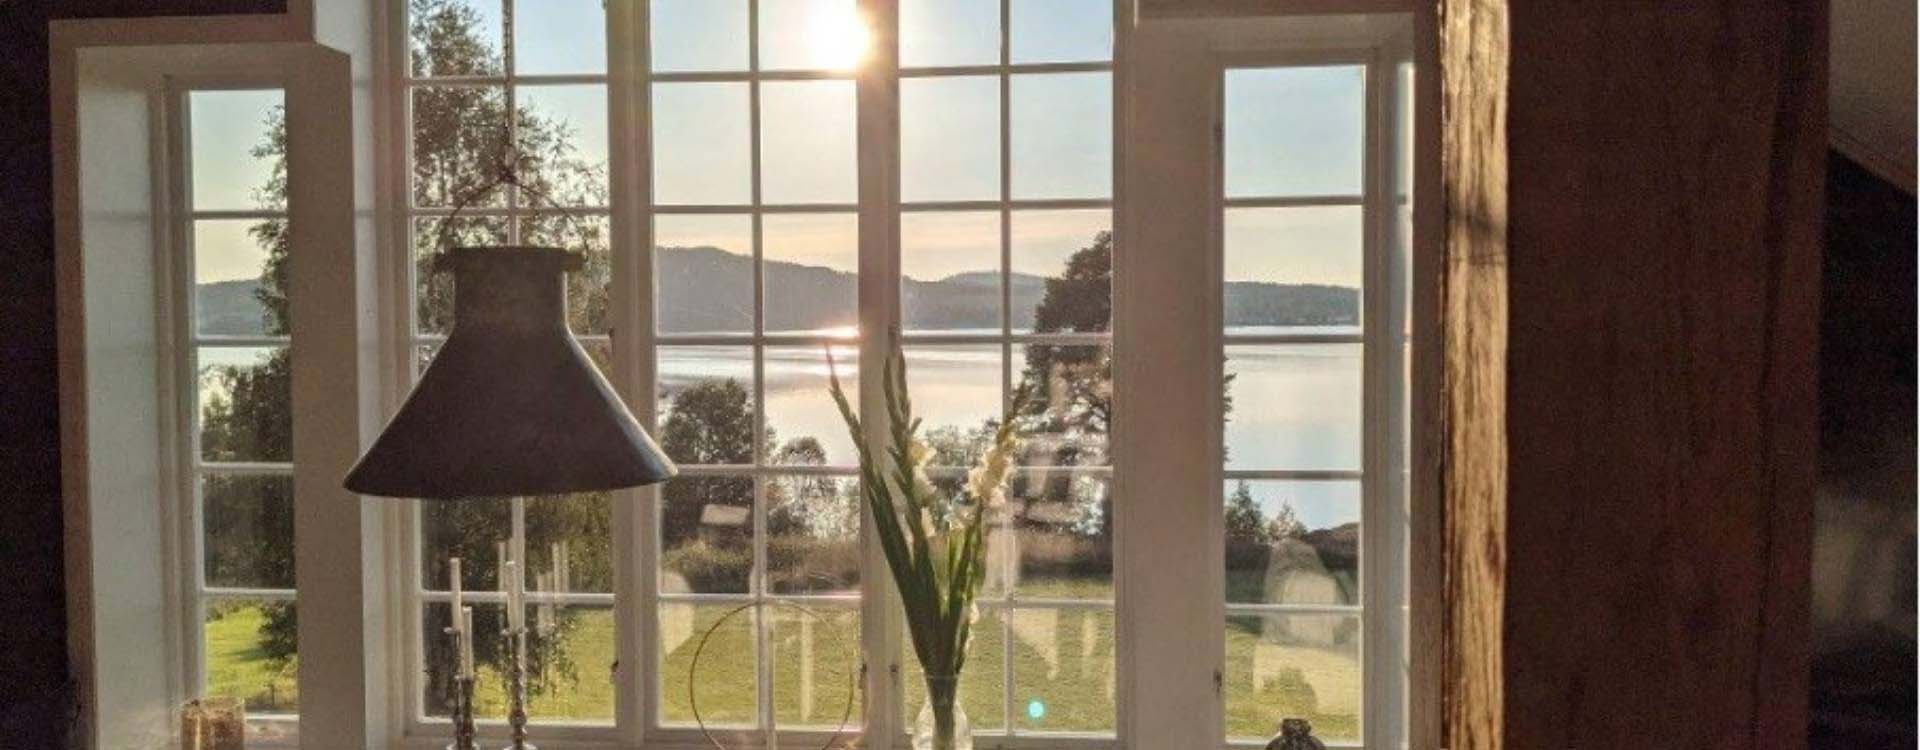 Zweeds landschap vanuit een huis